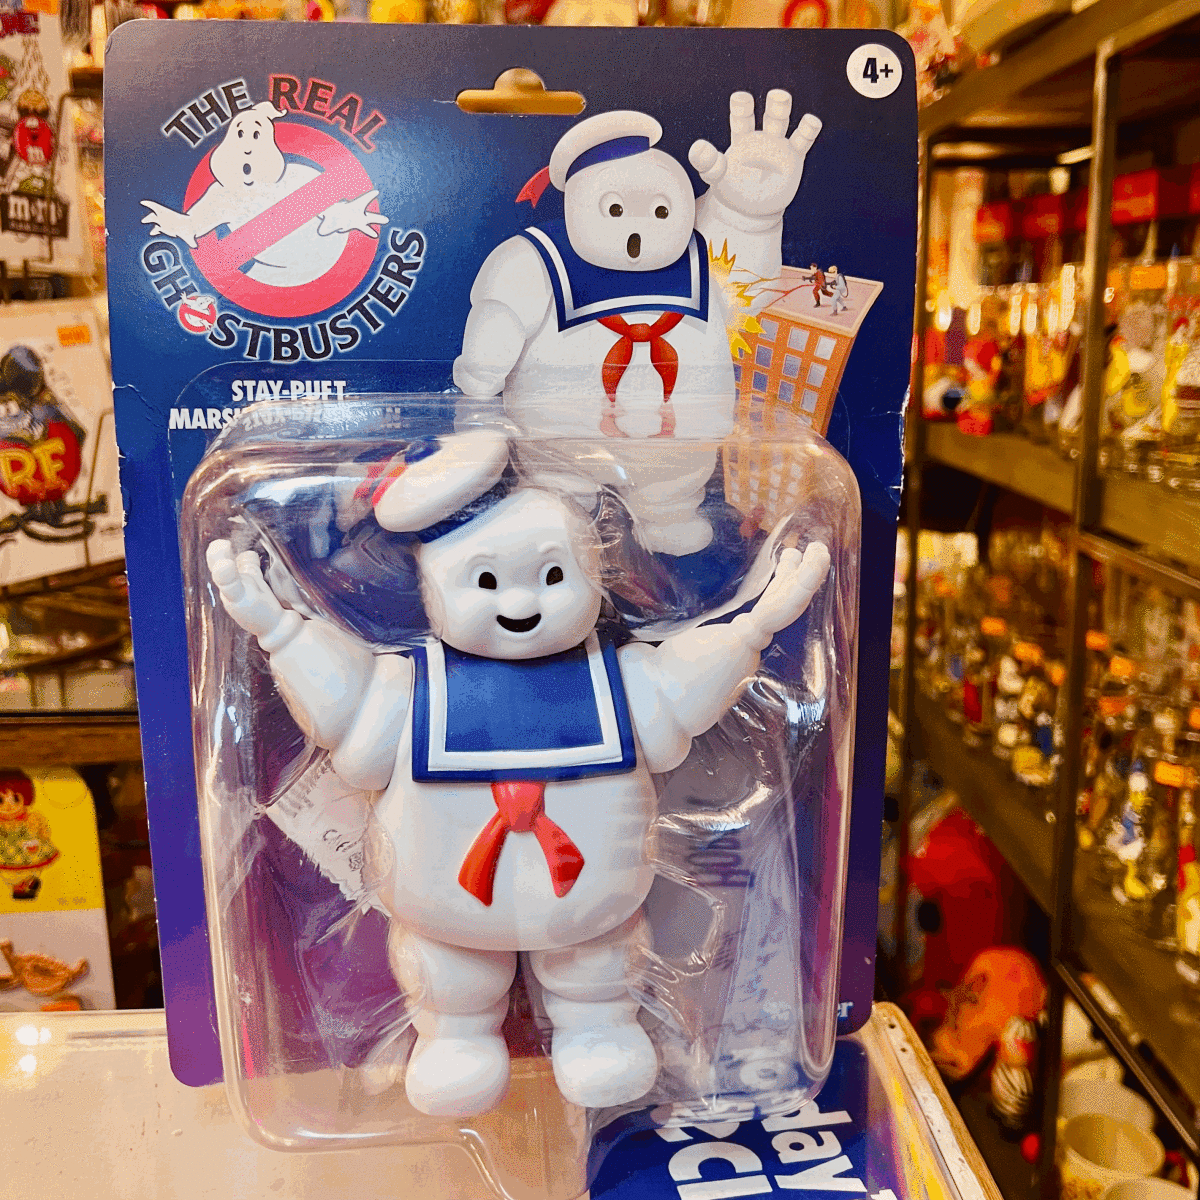 ゴーストバスターズ マシュマロマン フィギュア The Real Ghostbusters The Stay-Puft Marshmallowman Retro Kenner Hasbro